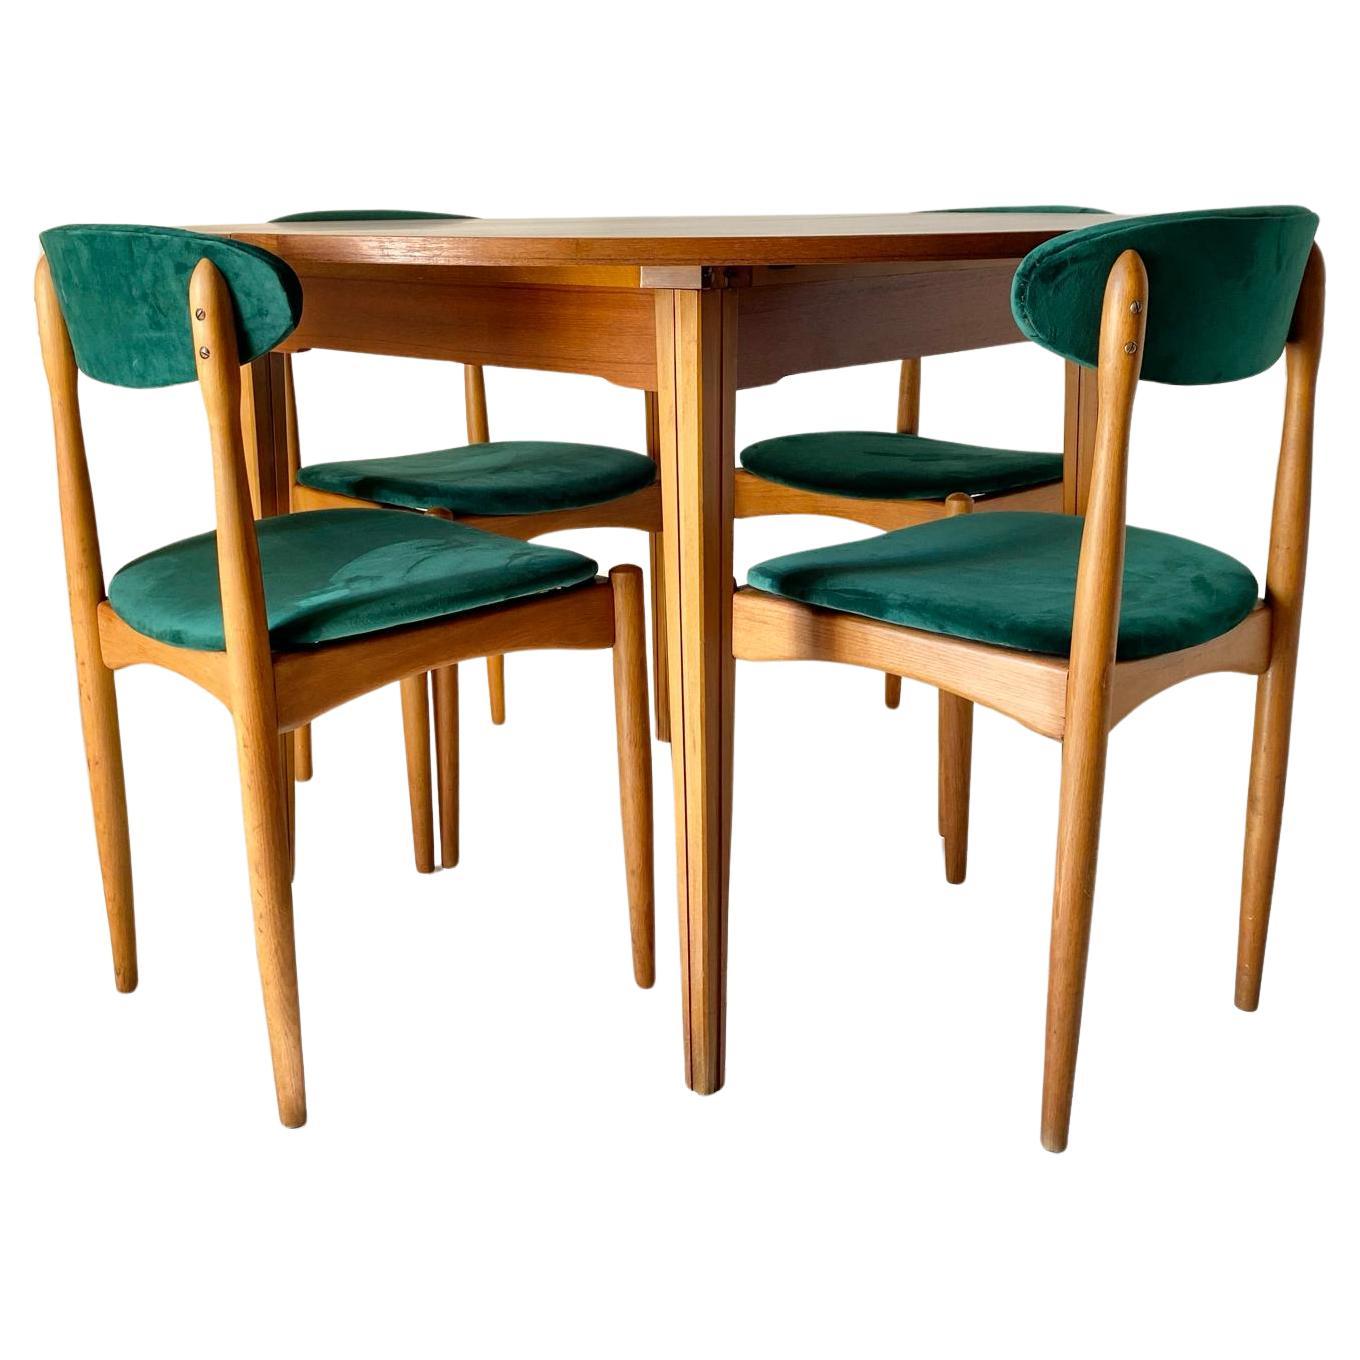 Ensemble de salle à manger The Scandinavian Modern Mid Century Modern conçu dans le style de Halas. Fabriqué en Italie dans les années 1960. L'ensemble est composé de quatre belles chaises de salle à manger en bois de hêtre massif avec des sièges en